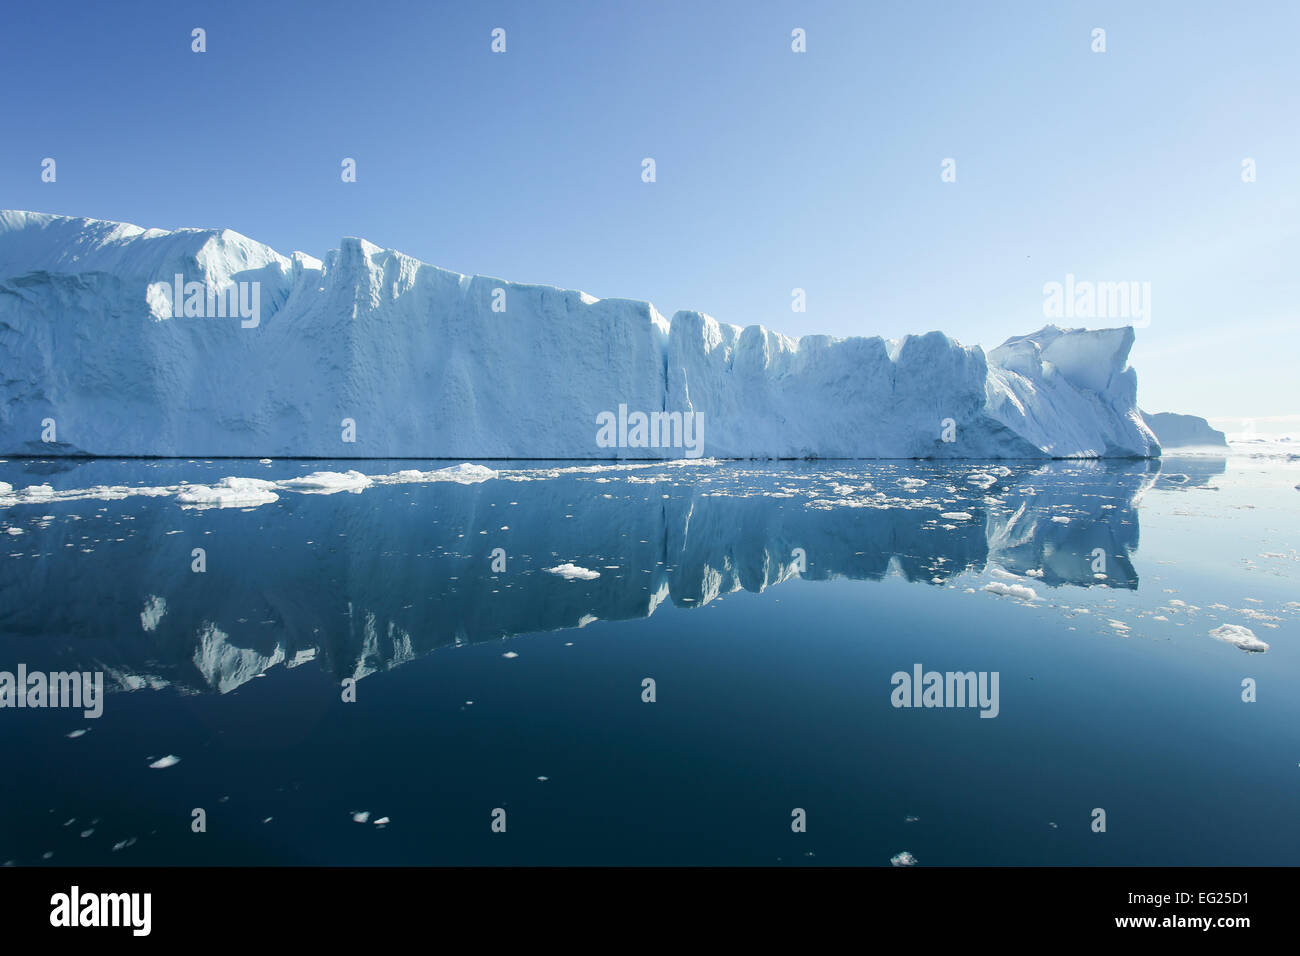 Greenland, Ilulissat Icefjord, tabular iceberg with reflection. Stock Photo